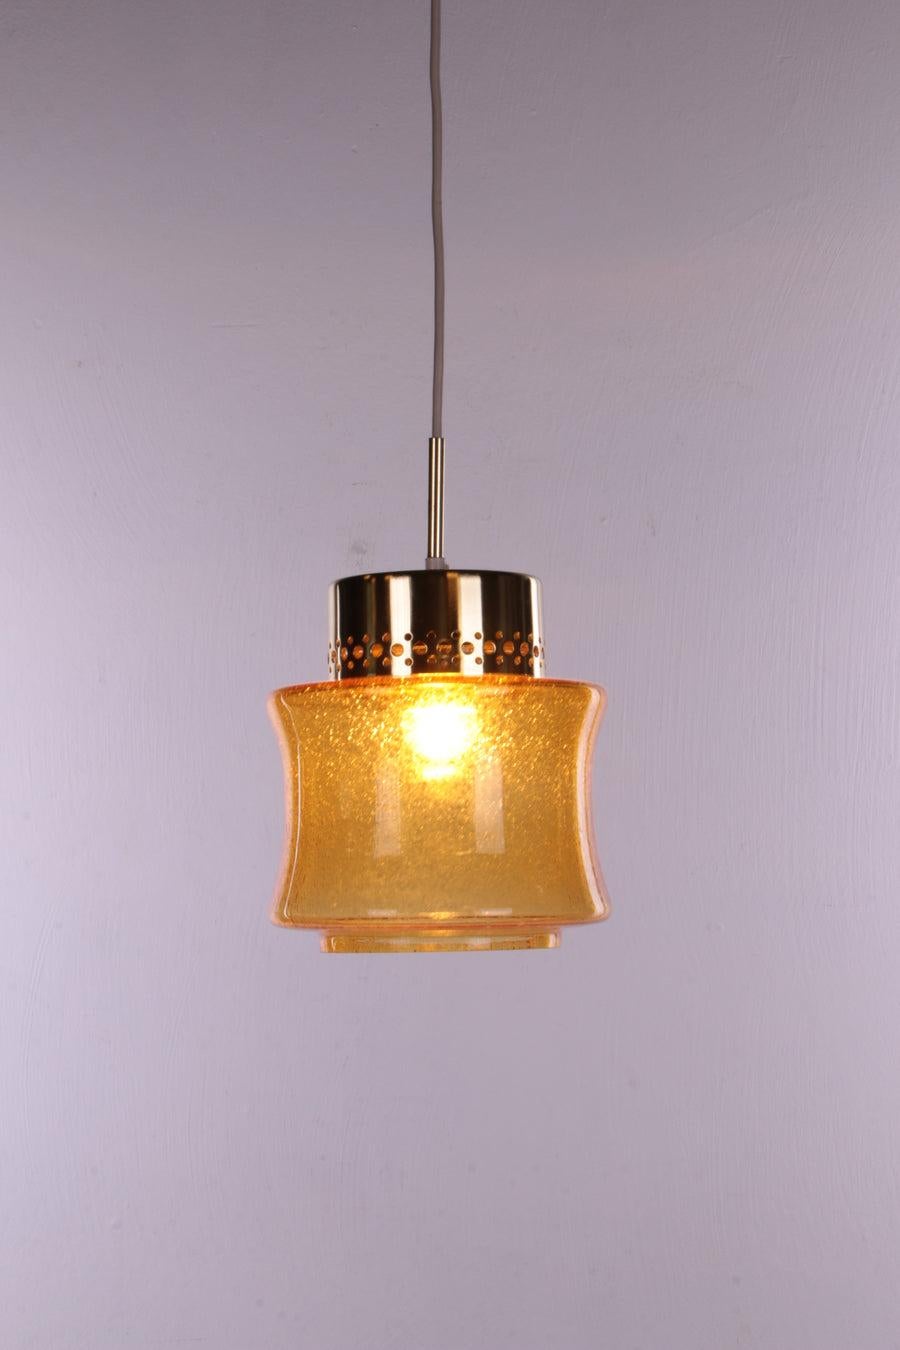 Ein Satz von 3 Stück Vintage Hollywood Regency Pendelleuchte, 1960er Jahre Deutschland

Dies sind sehr schöne Lampen mit einem schönen gelben Glasschirm.

Montiert in einer goldfarbenen Fassung mit einem E27-Anschluss.

Diese Lampen wurden vom VEB